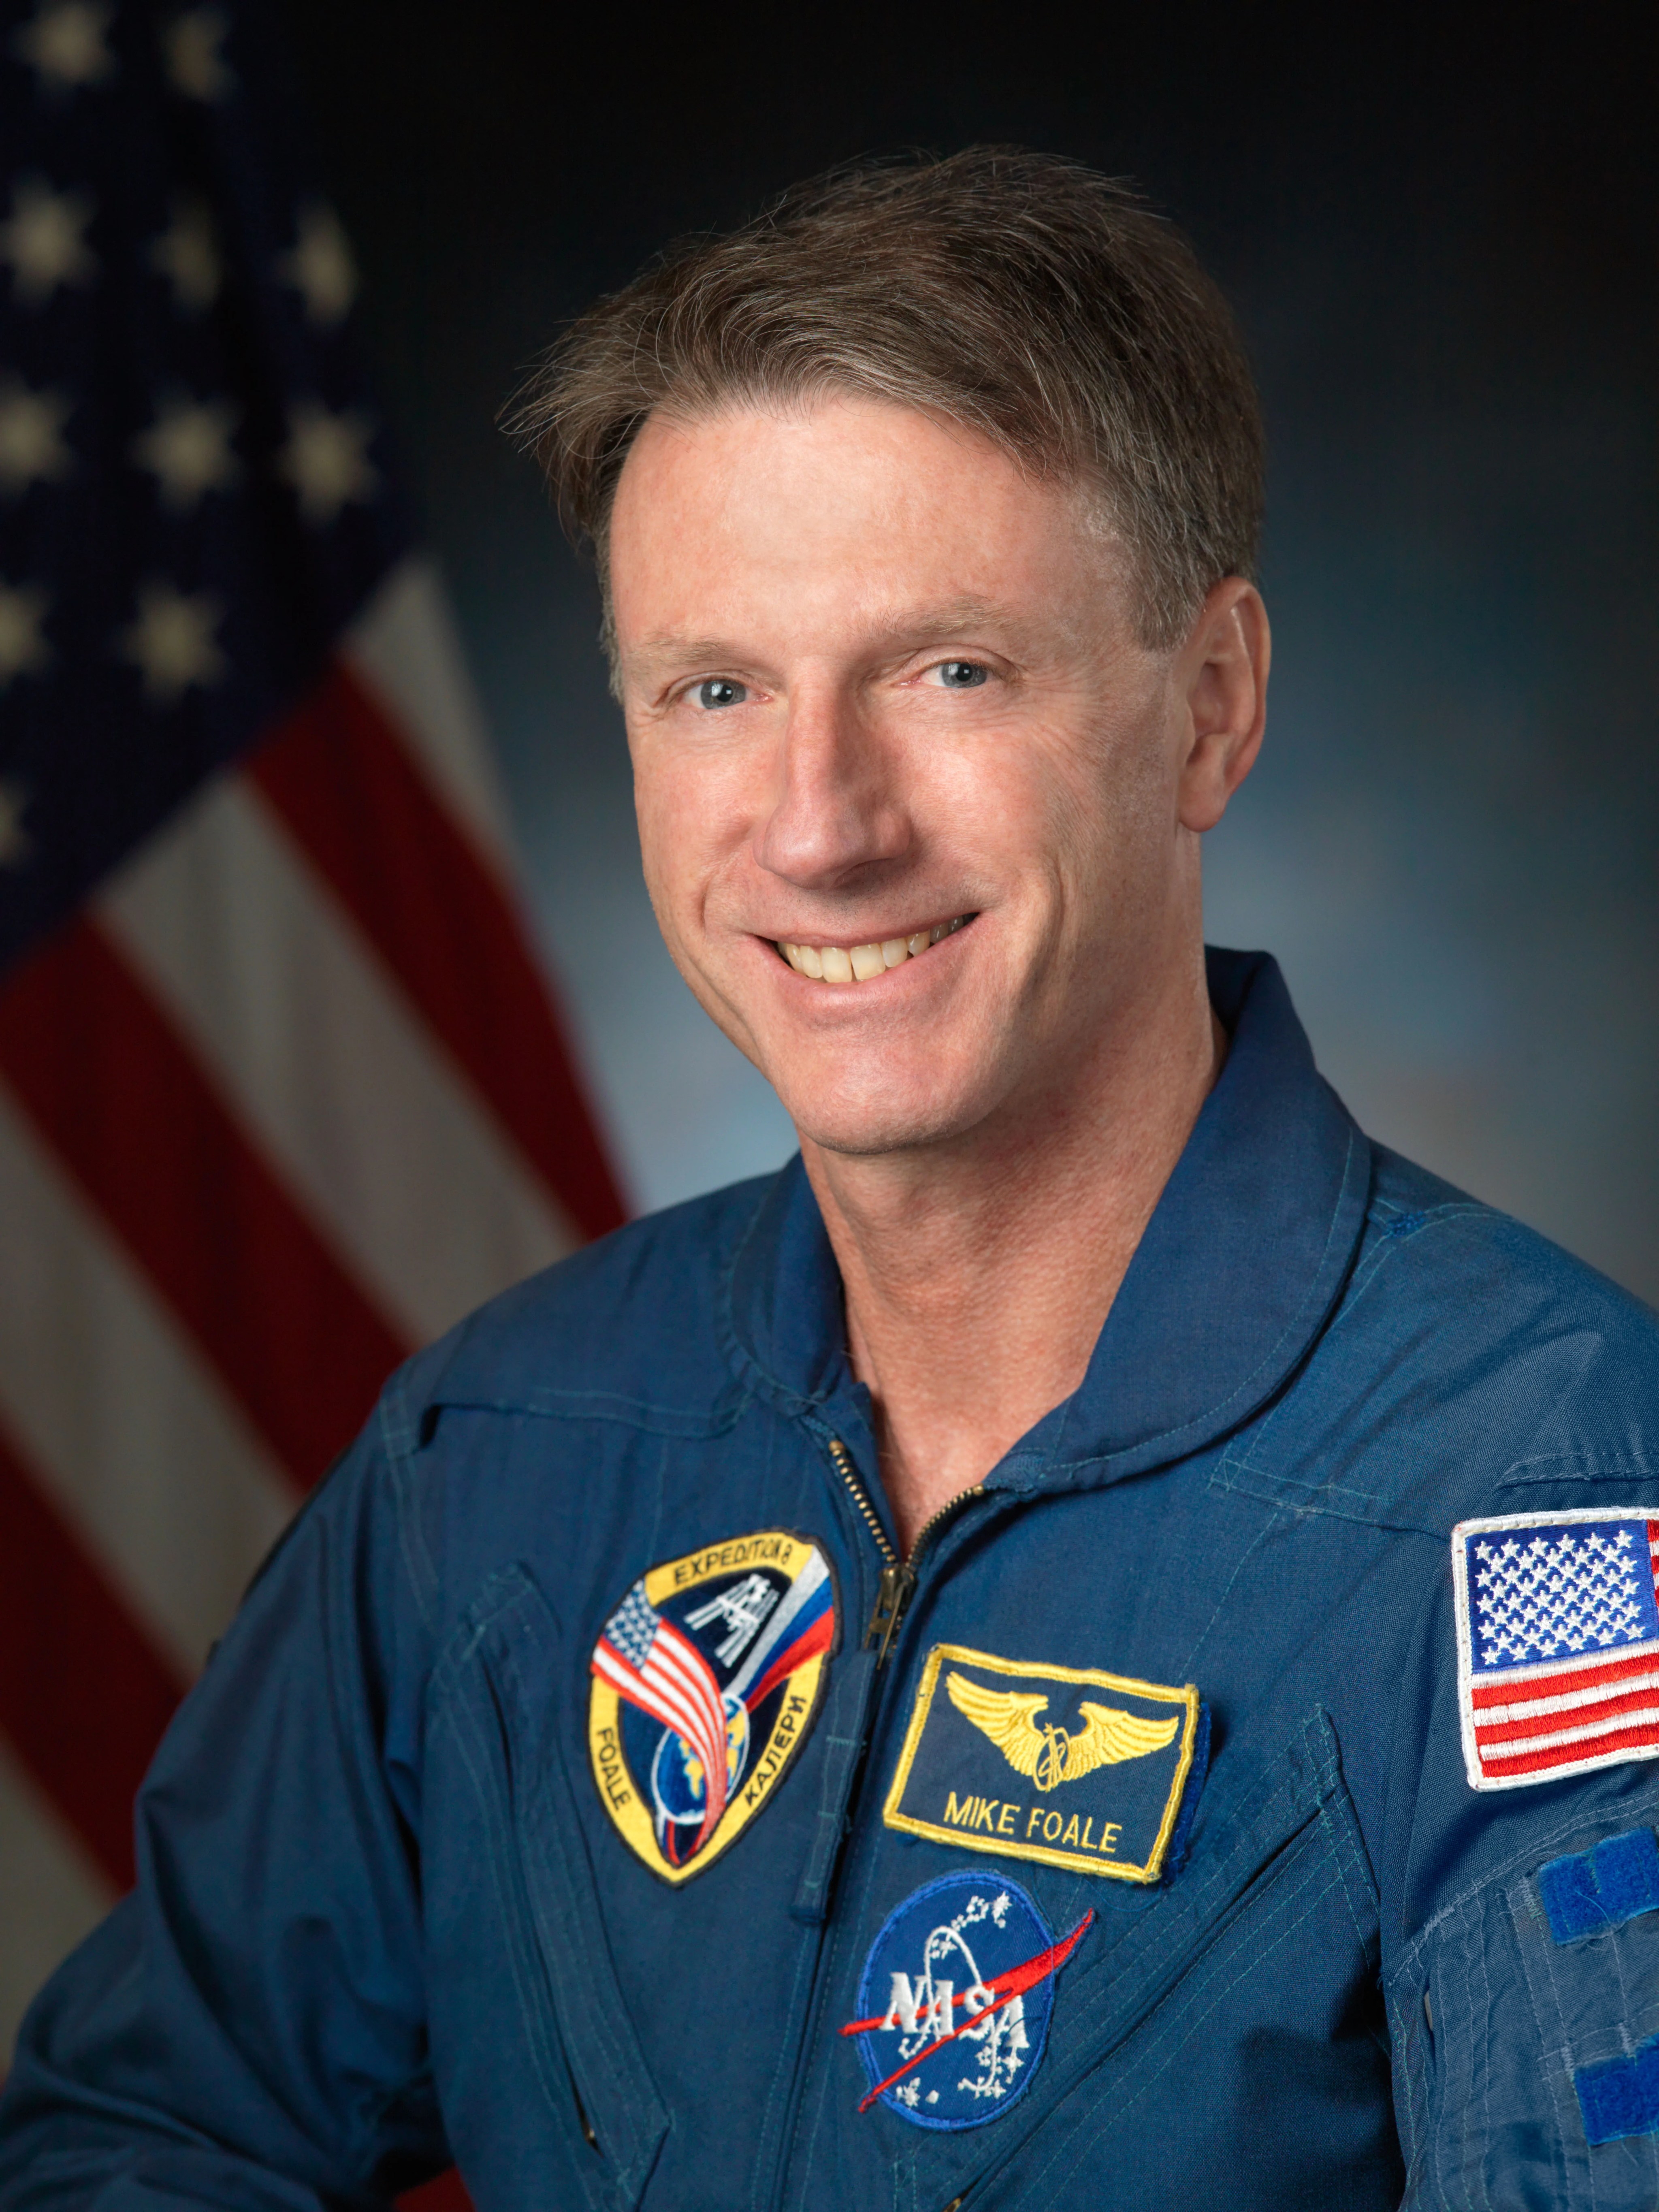 Official astronaut portrait of C. Michael Foale.